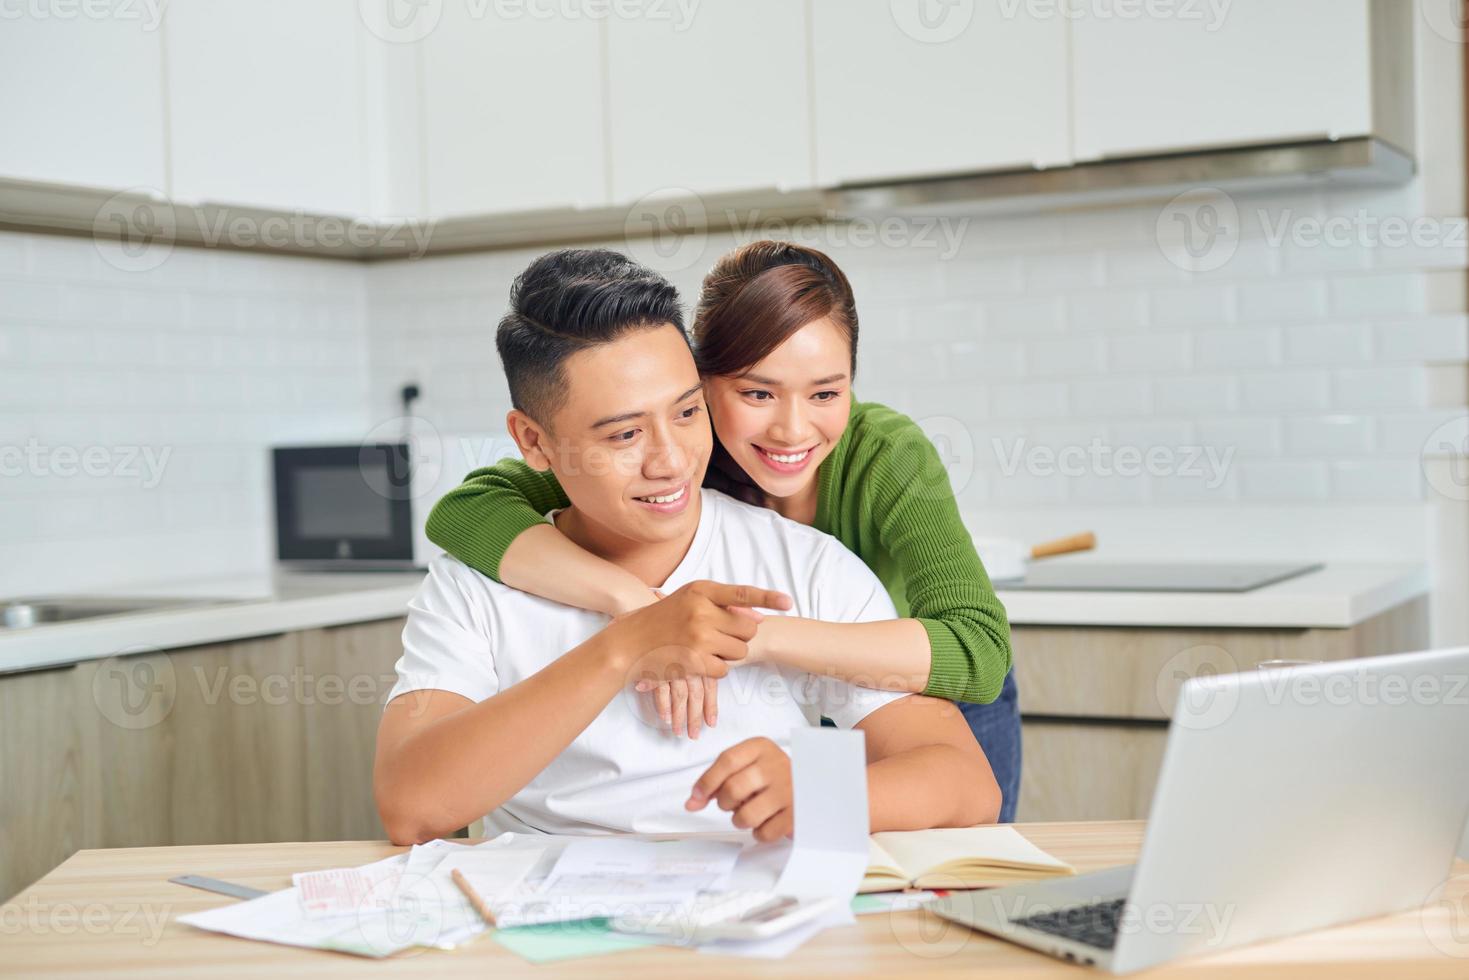 feliz casal jovem marido e mulher usando laptop olhando para tela pagar contas on-line no aplicativo calcular o pagamento do investimento da hipoteca foto